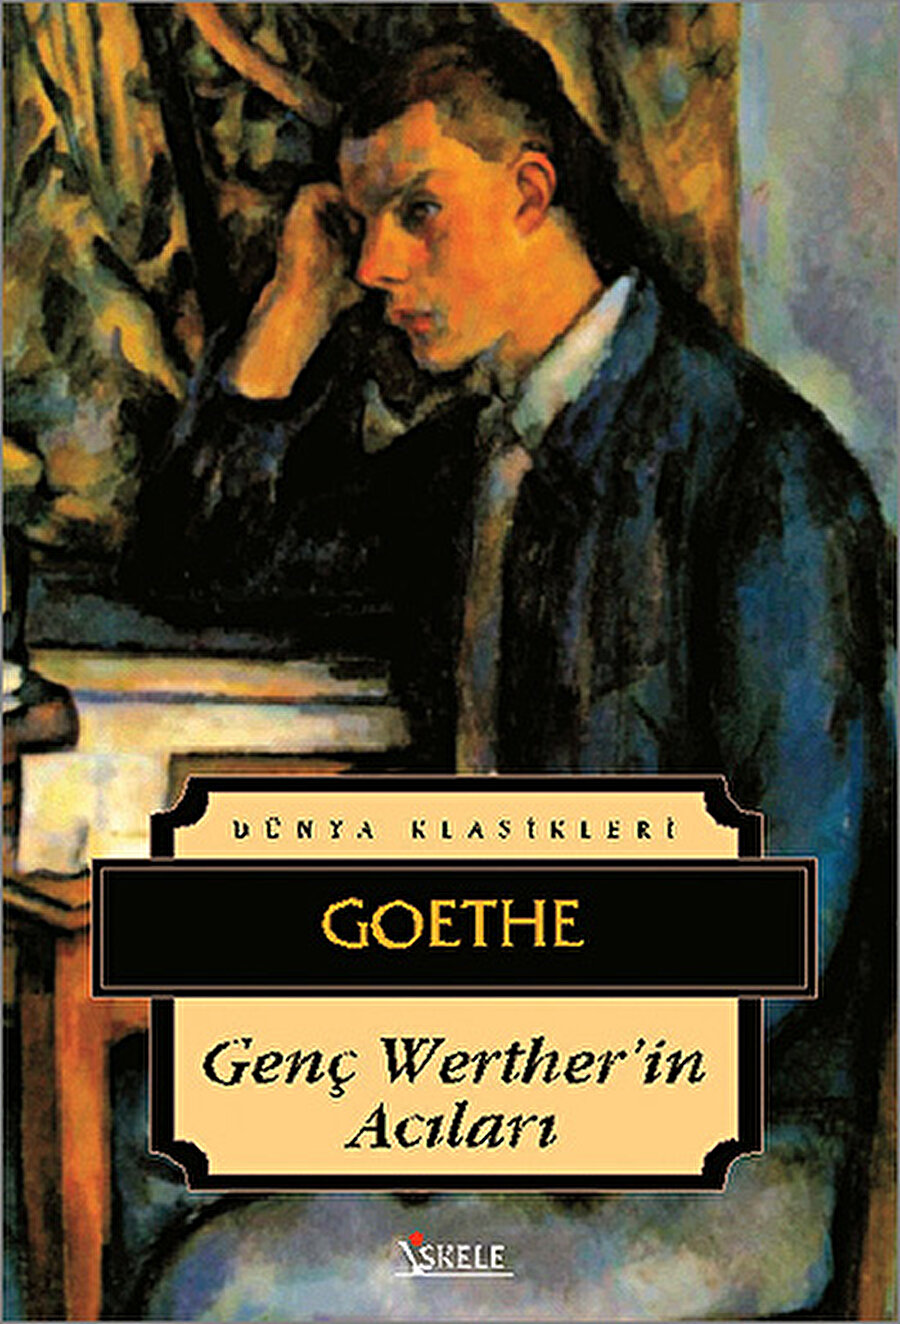 Genç Werther’in Acıları / Goethe

                                    Hayali aşkı Wilhelm'e yazdığı mektupları ile acı çeken bir ressamın hikayesi anlatılır.
                                